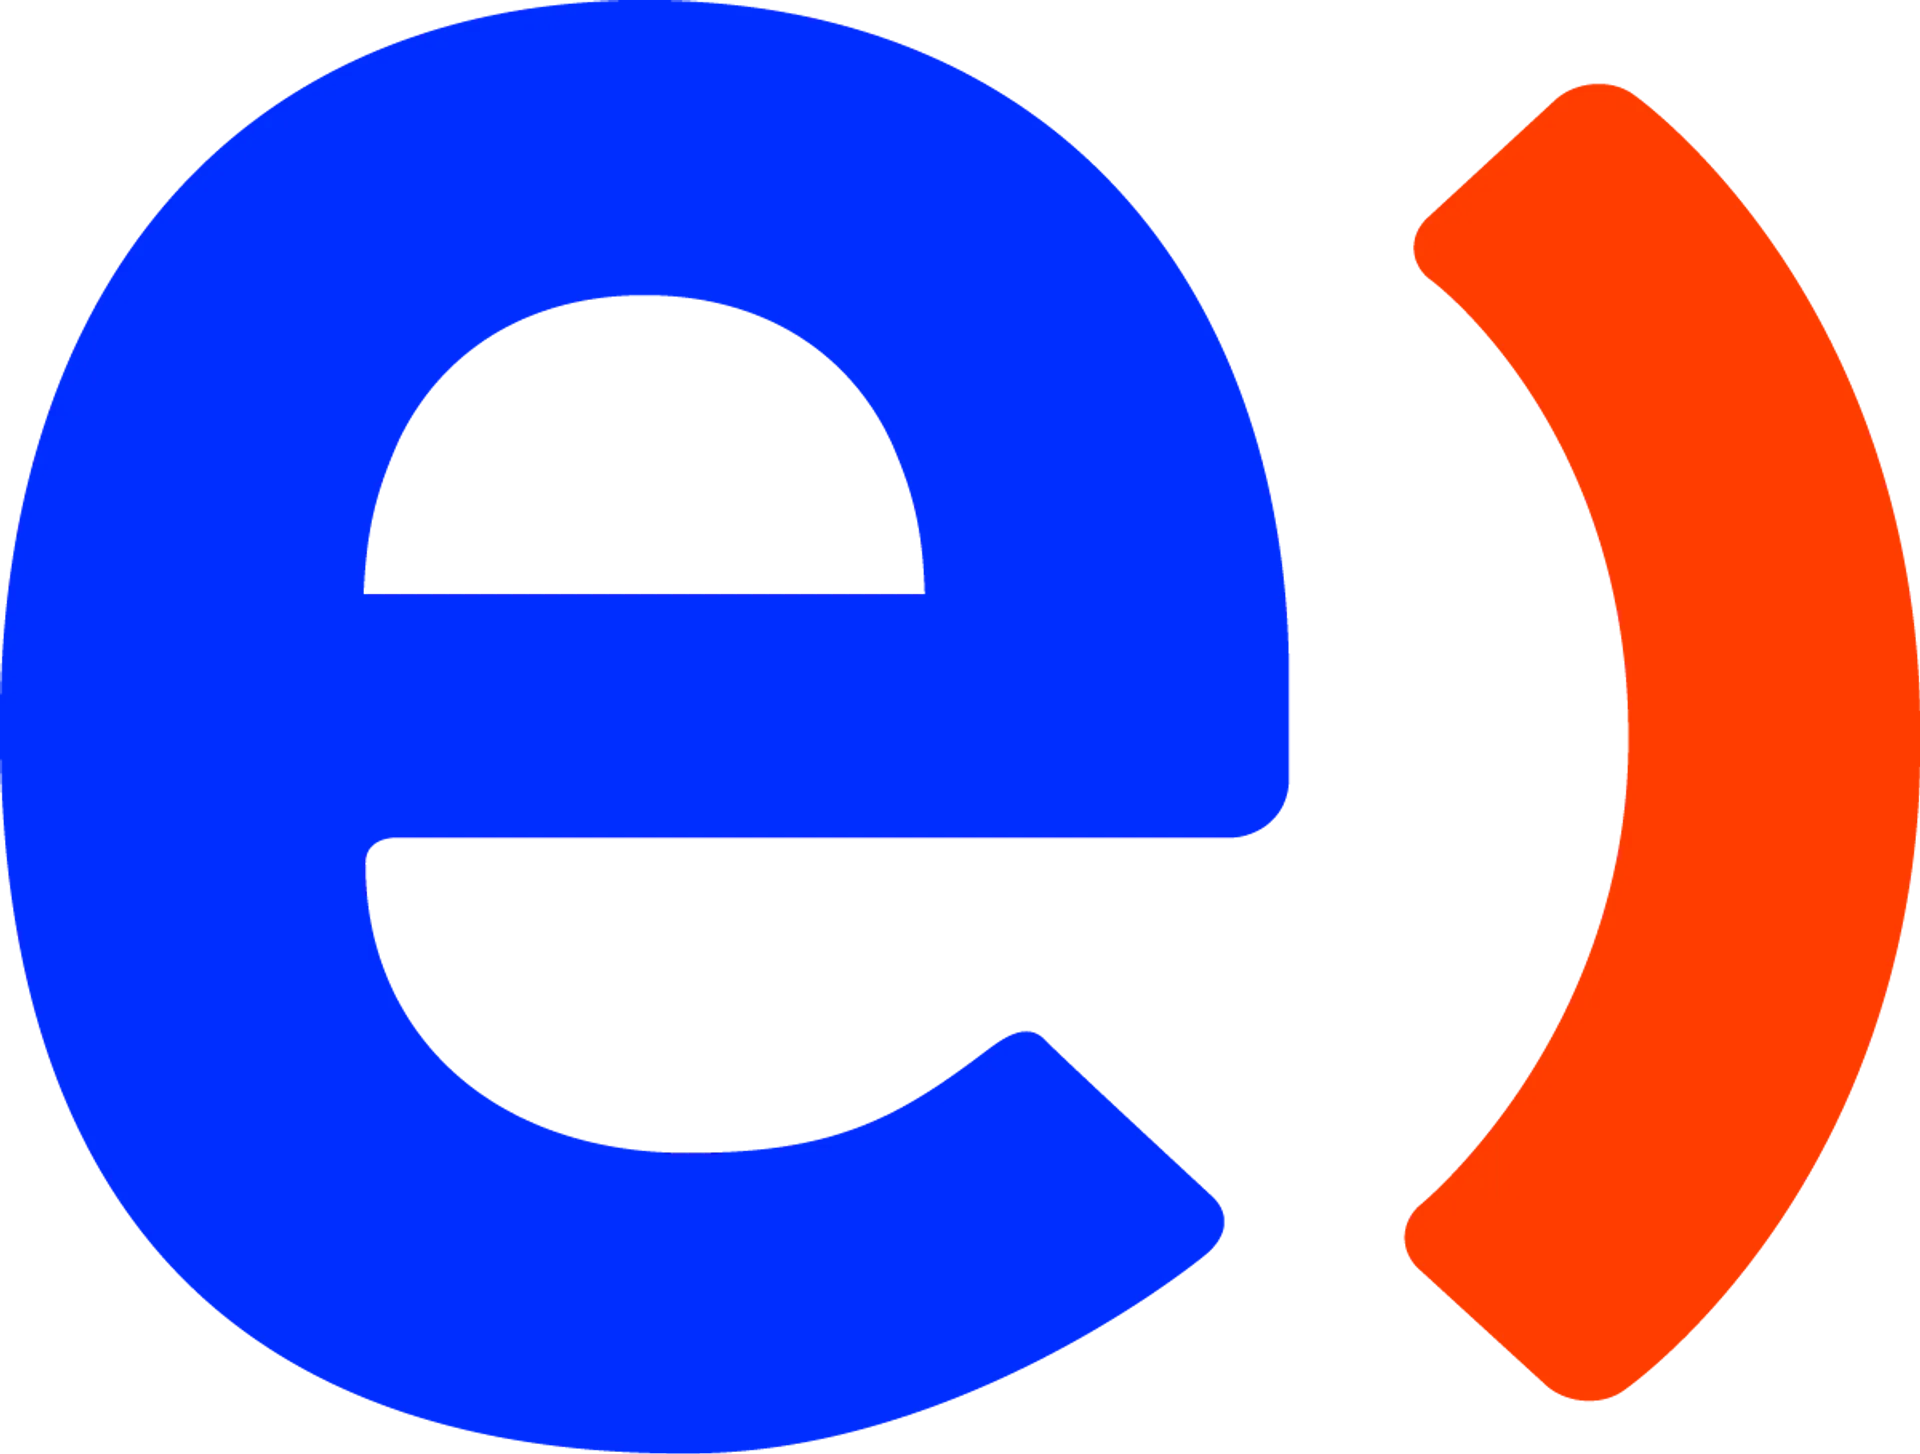 ENTEL logo